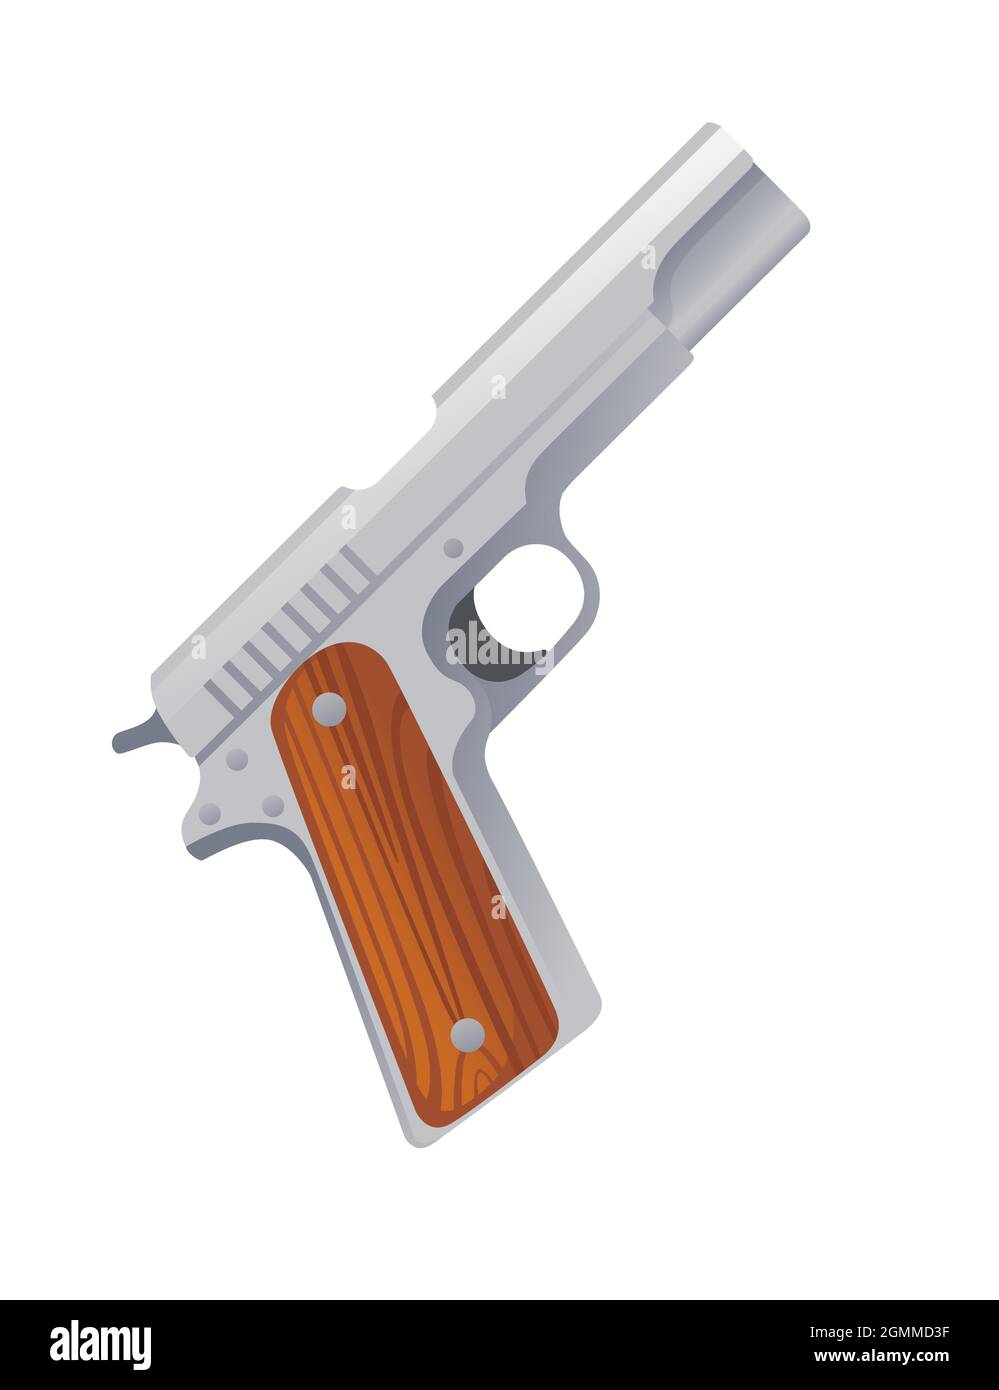 Modern handgun pistol Colt 1911 vector illustration on white background Stock Vector